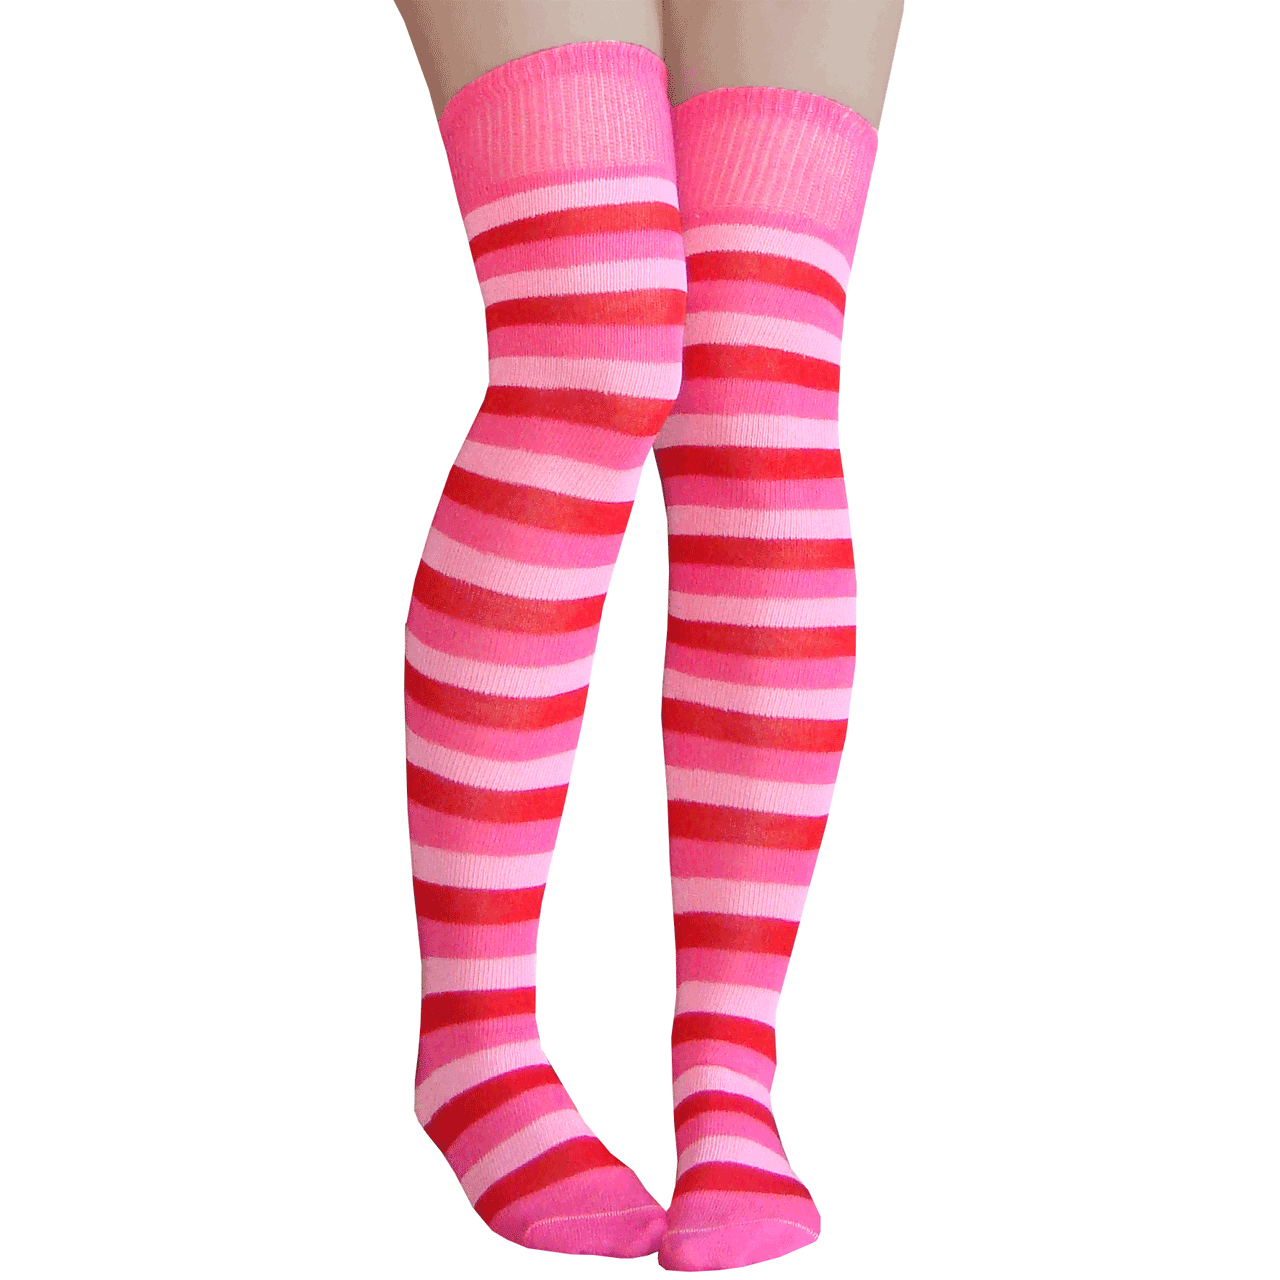 Jefferies Socks Stripe Knee High Tube Socks 5 Pair Pack BUY 1 GET 1 FREE